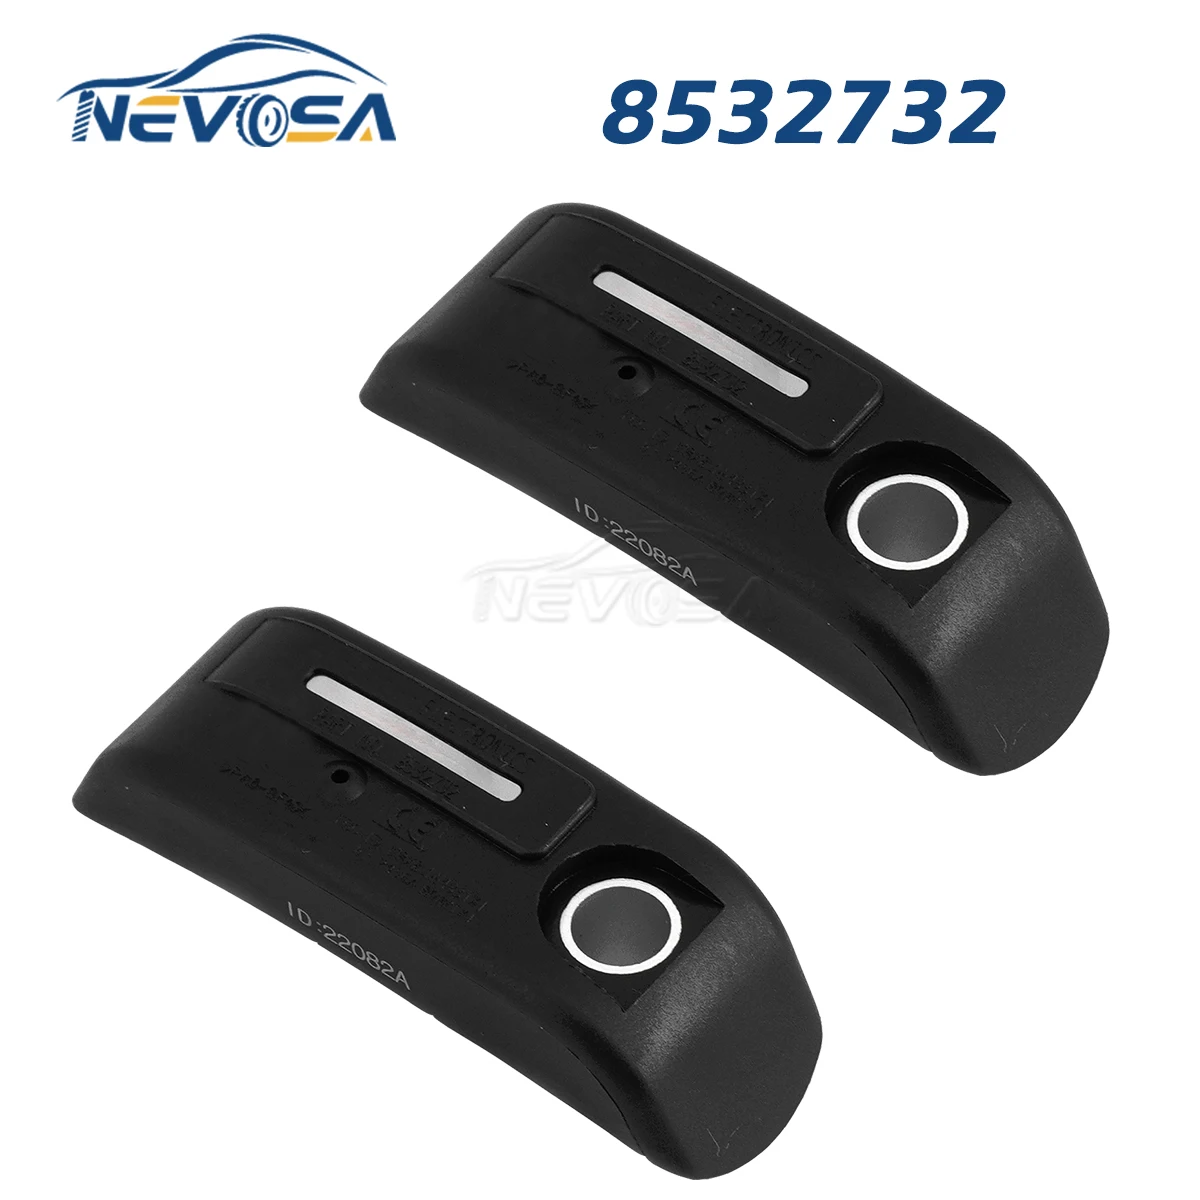 NEVOSA 8532732 BMW Motorcycle TPMS Sensor For BMW C 600 650 BMW F 700 800 BMW K 1200 1600 BMW R 1200 900 36318532732 1/2PCS